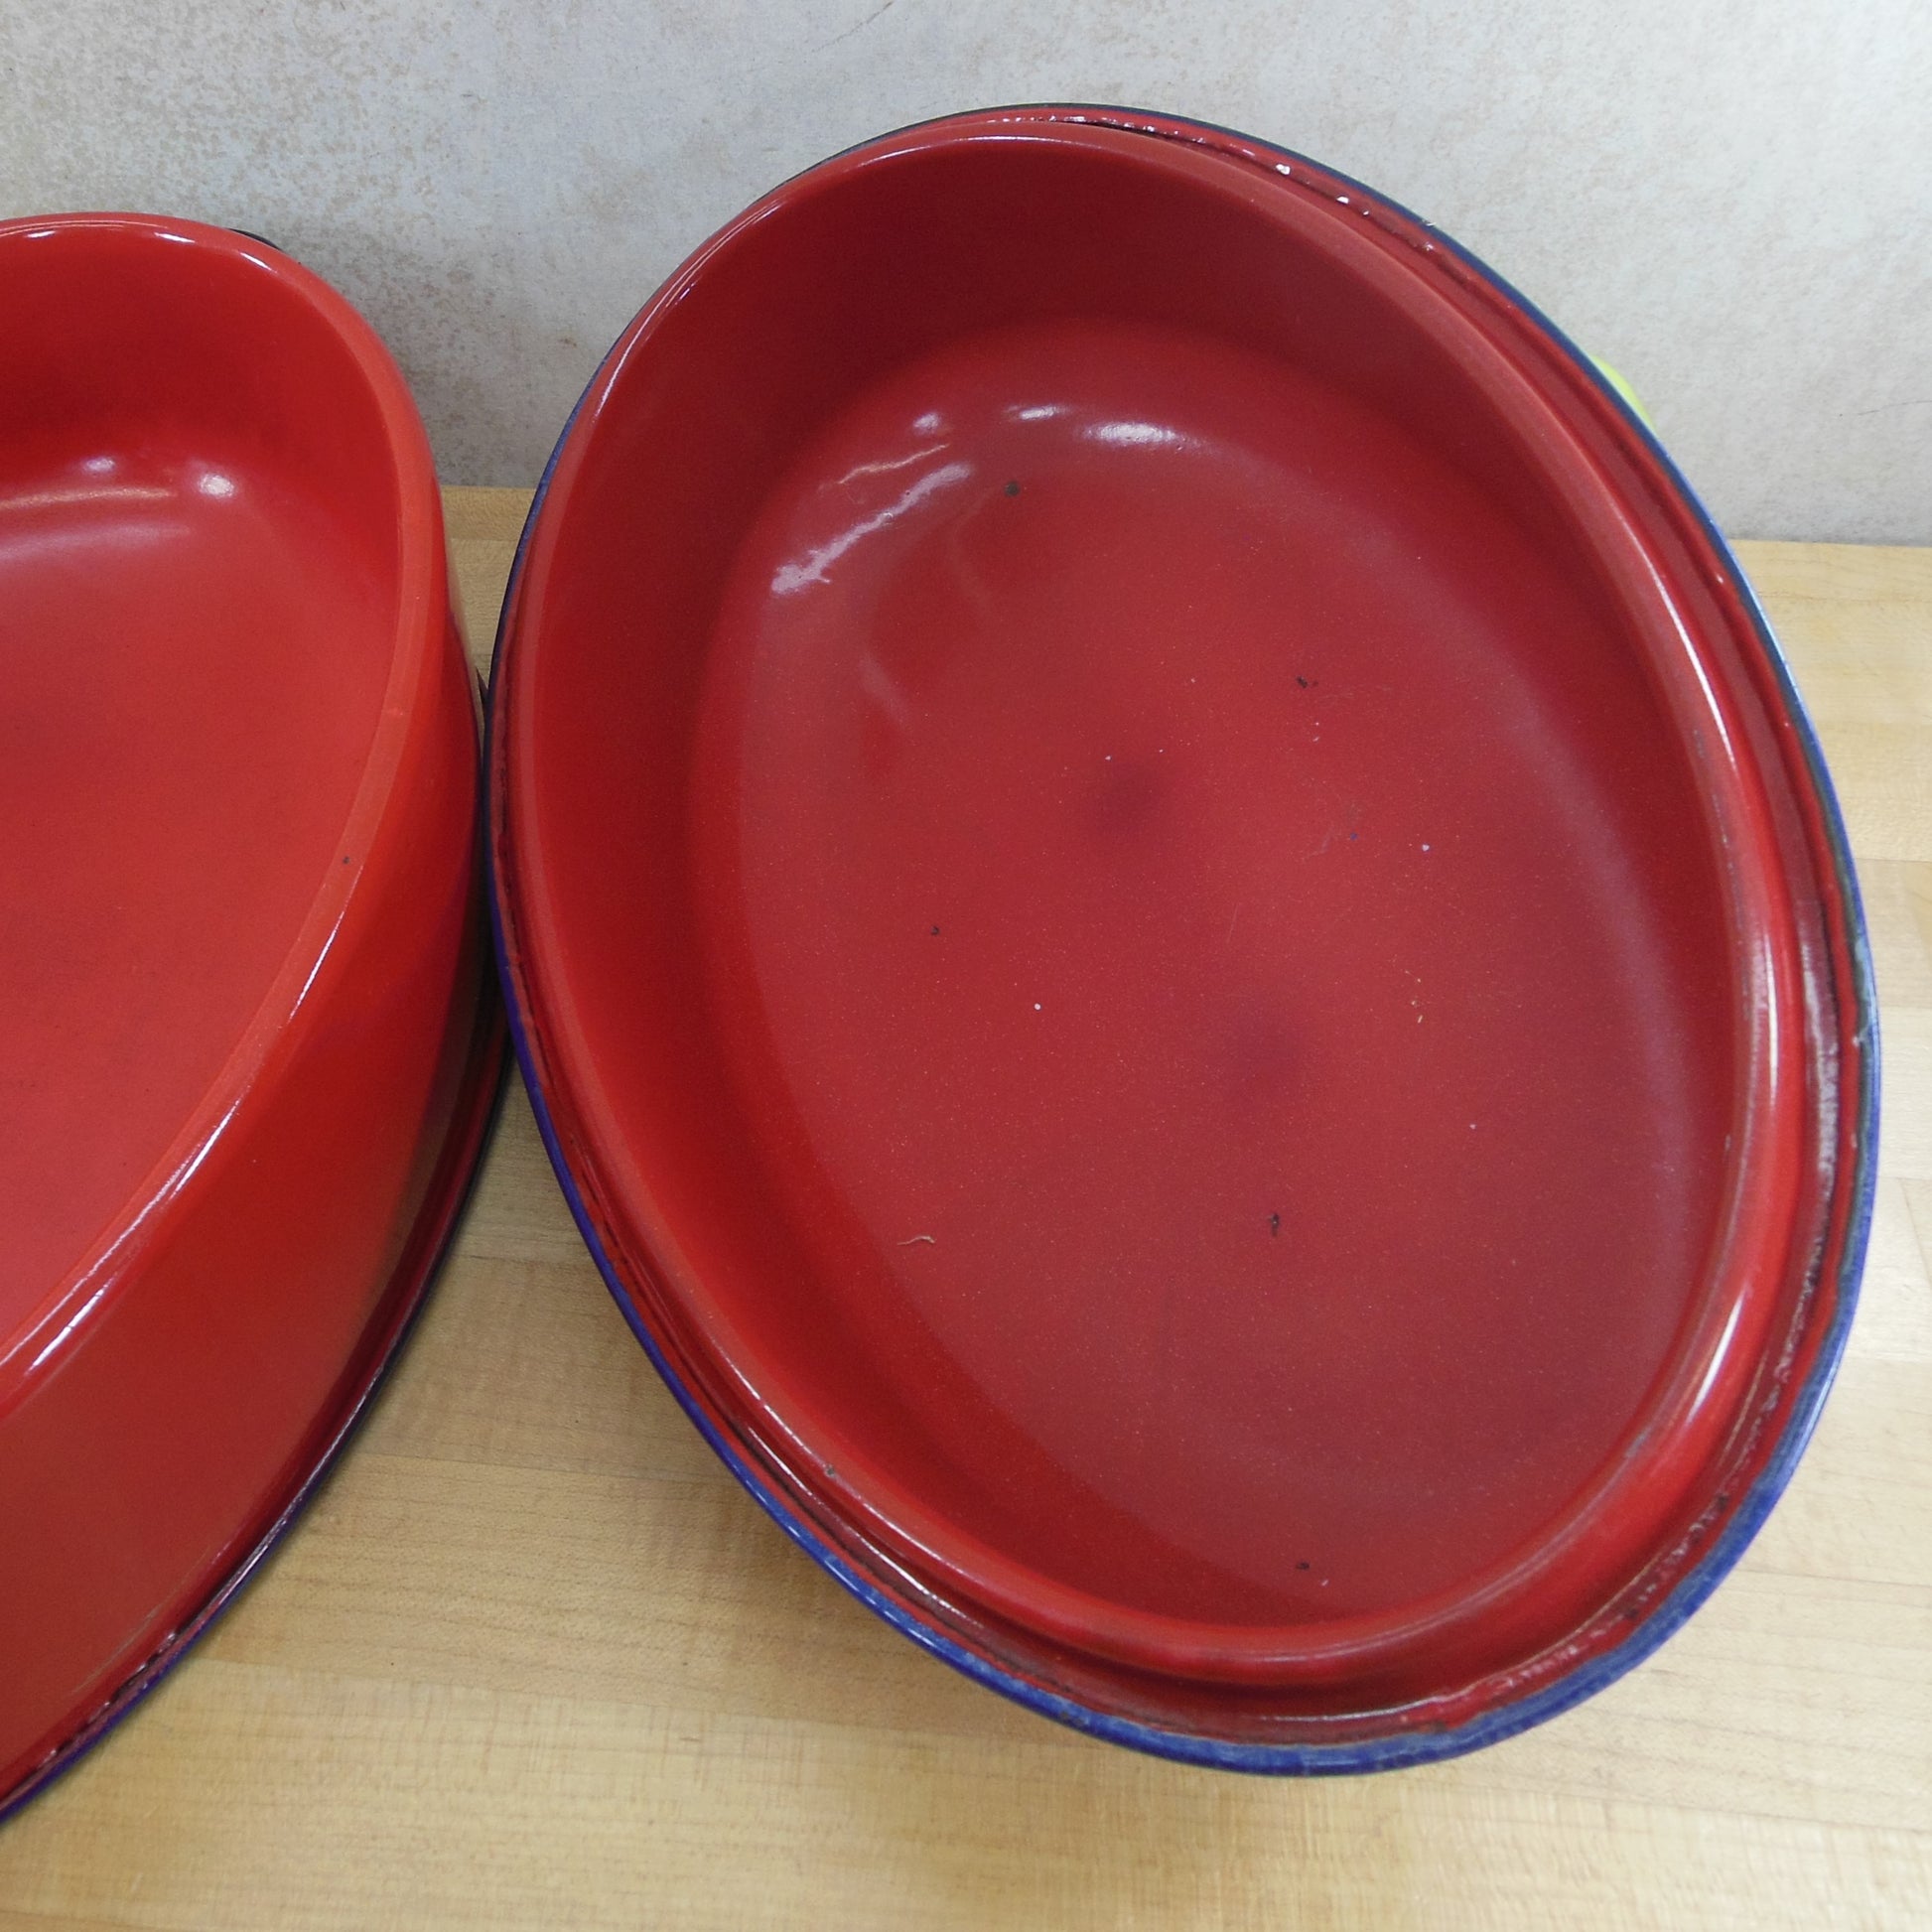 Unbranded Red Blue Trim Rim Enamelware Oval Roaster Pot